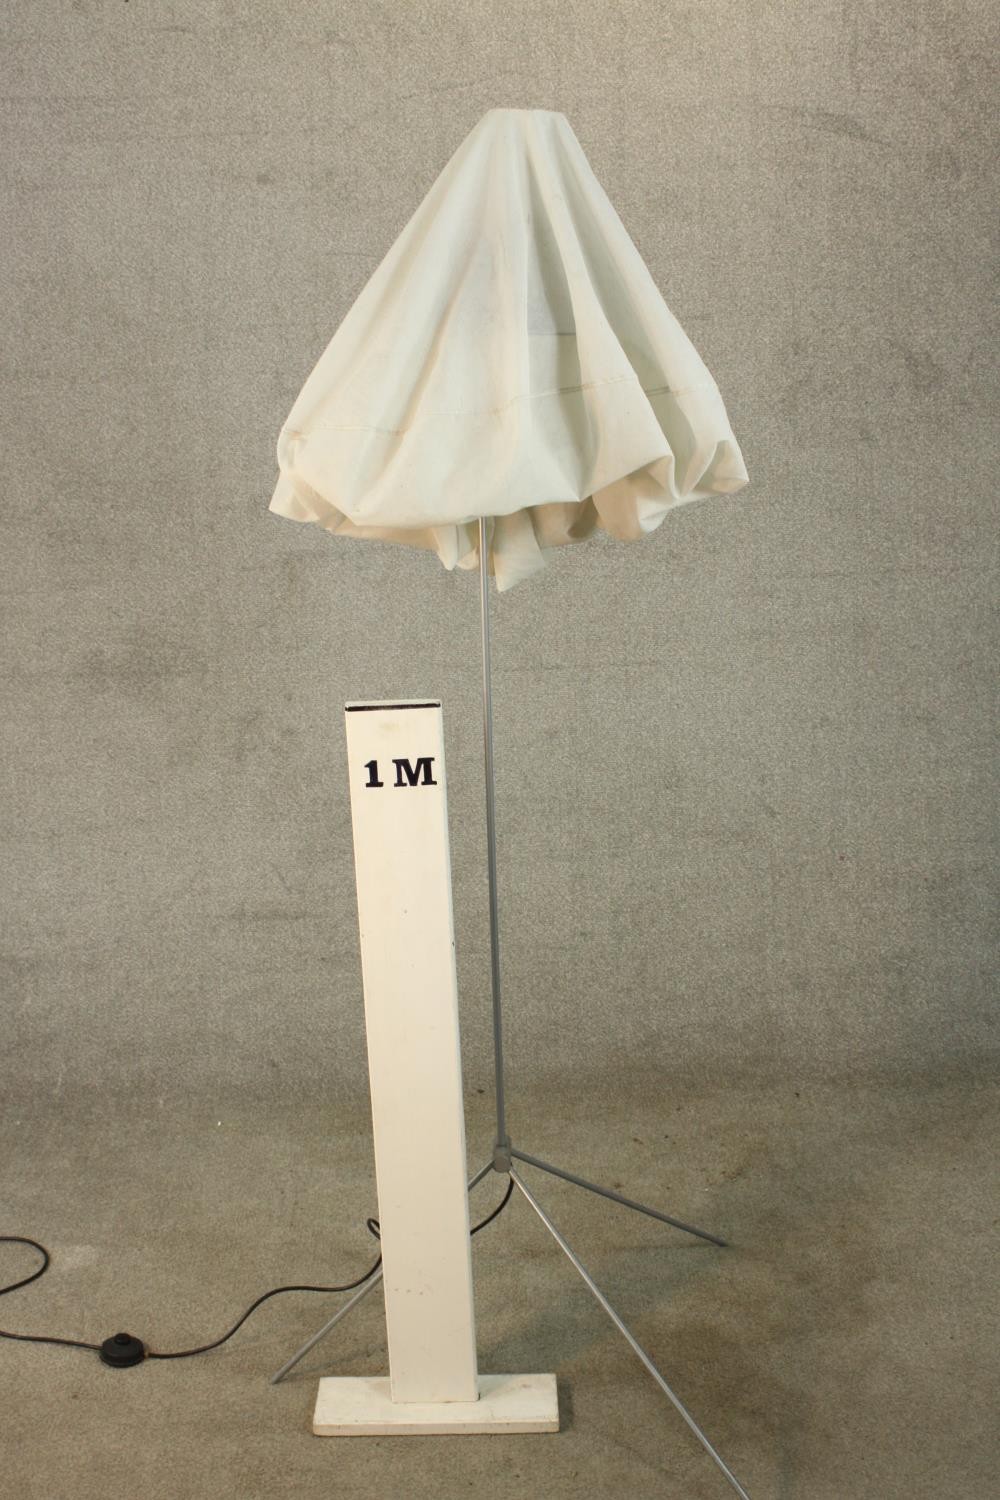 A 'Glowblow' floor lamp by Vesa Hinkola, Markus Nevalainen, Rane Vaskivuori, Snowcrash. - Image 2 of 5